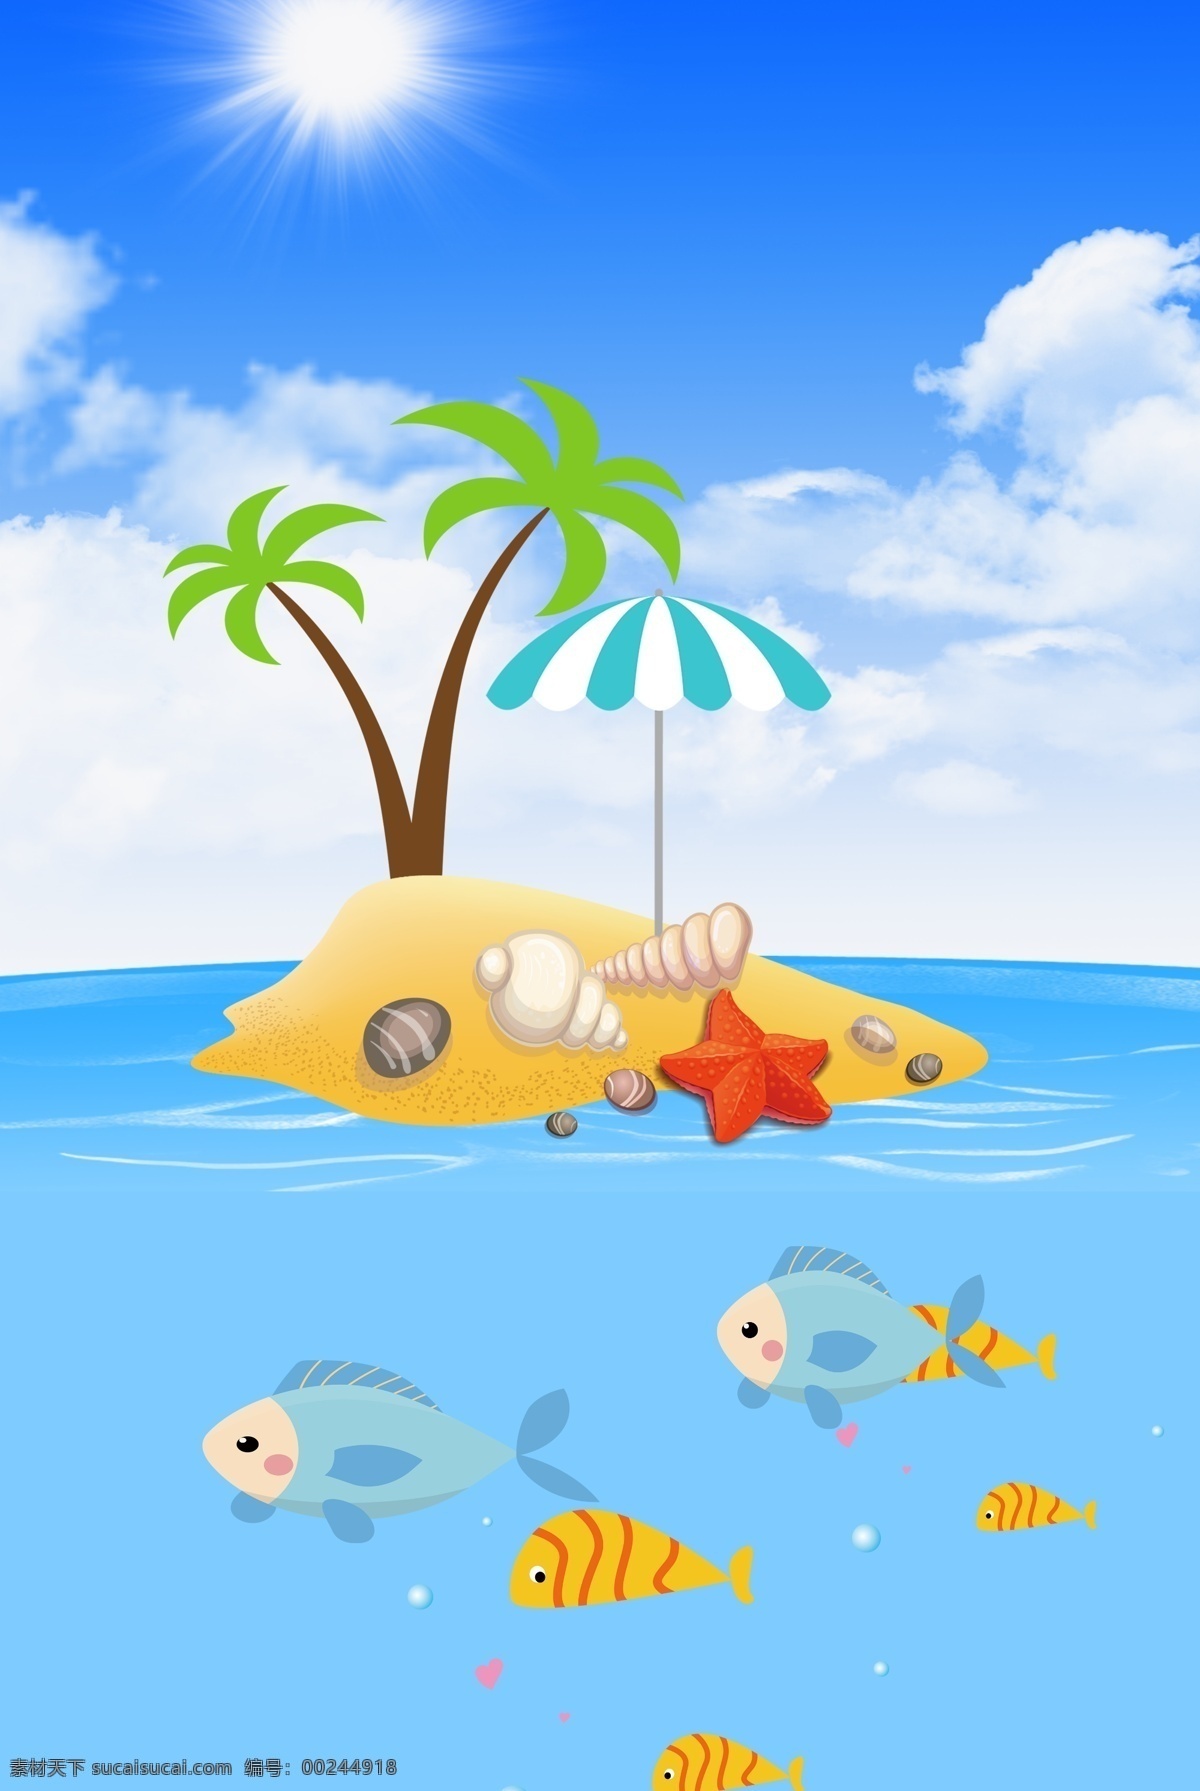 夏天 海上 小岛 海鱼 贝壳 海报 背景 海上小岛 海岛 大海 鱼群 海报背景